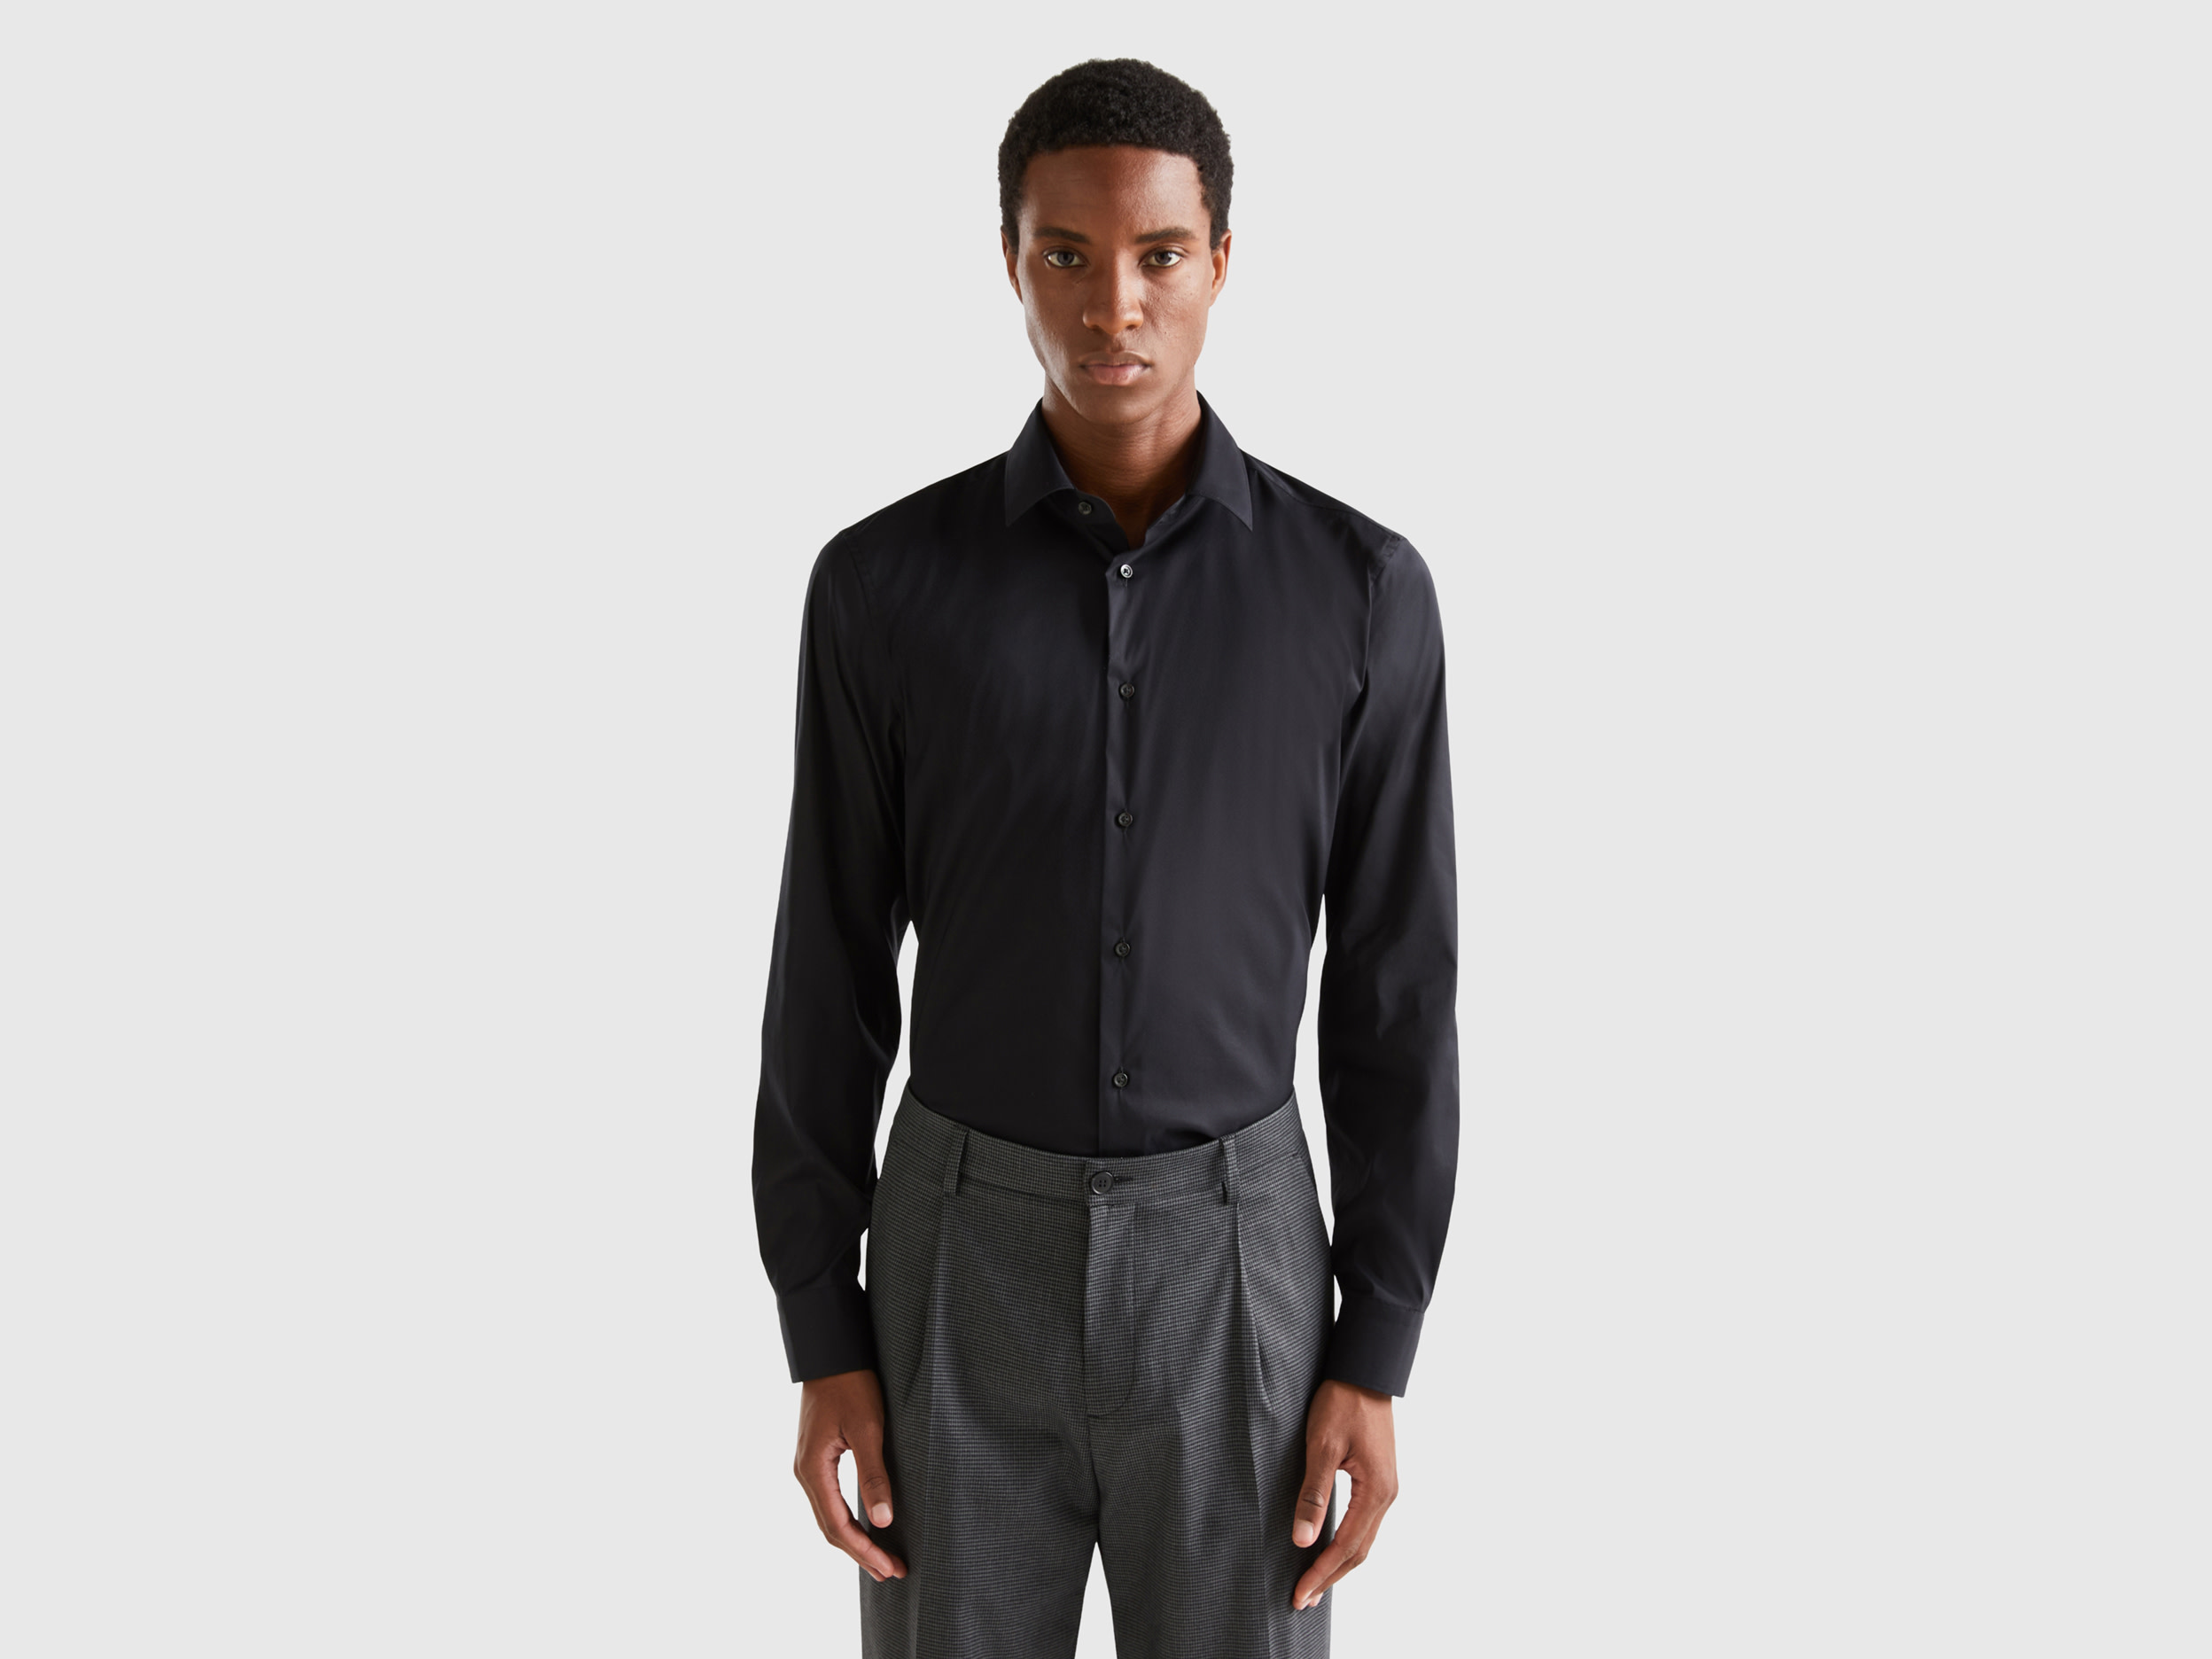 Benetton, Solid Color Slim Fit Shirt, size XXL, Black, Men